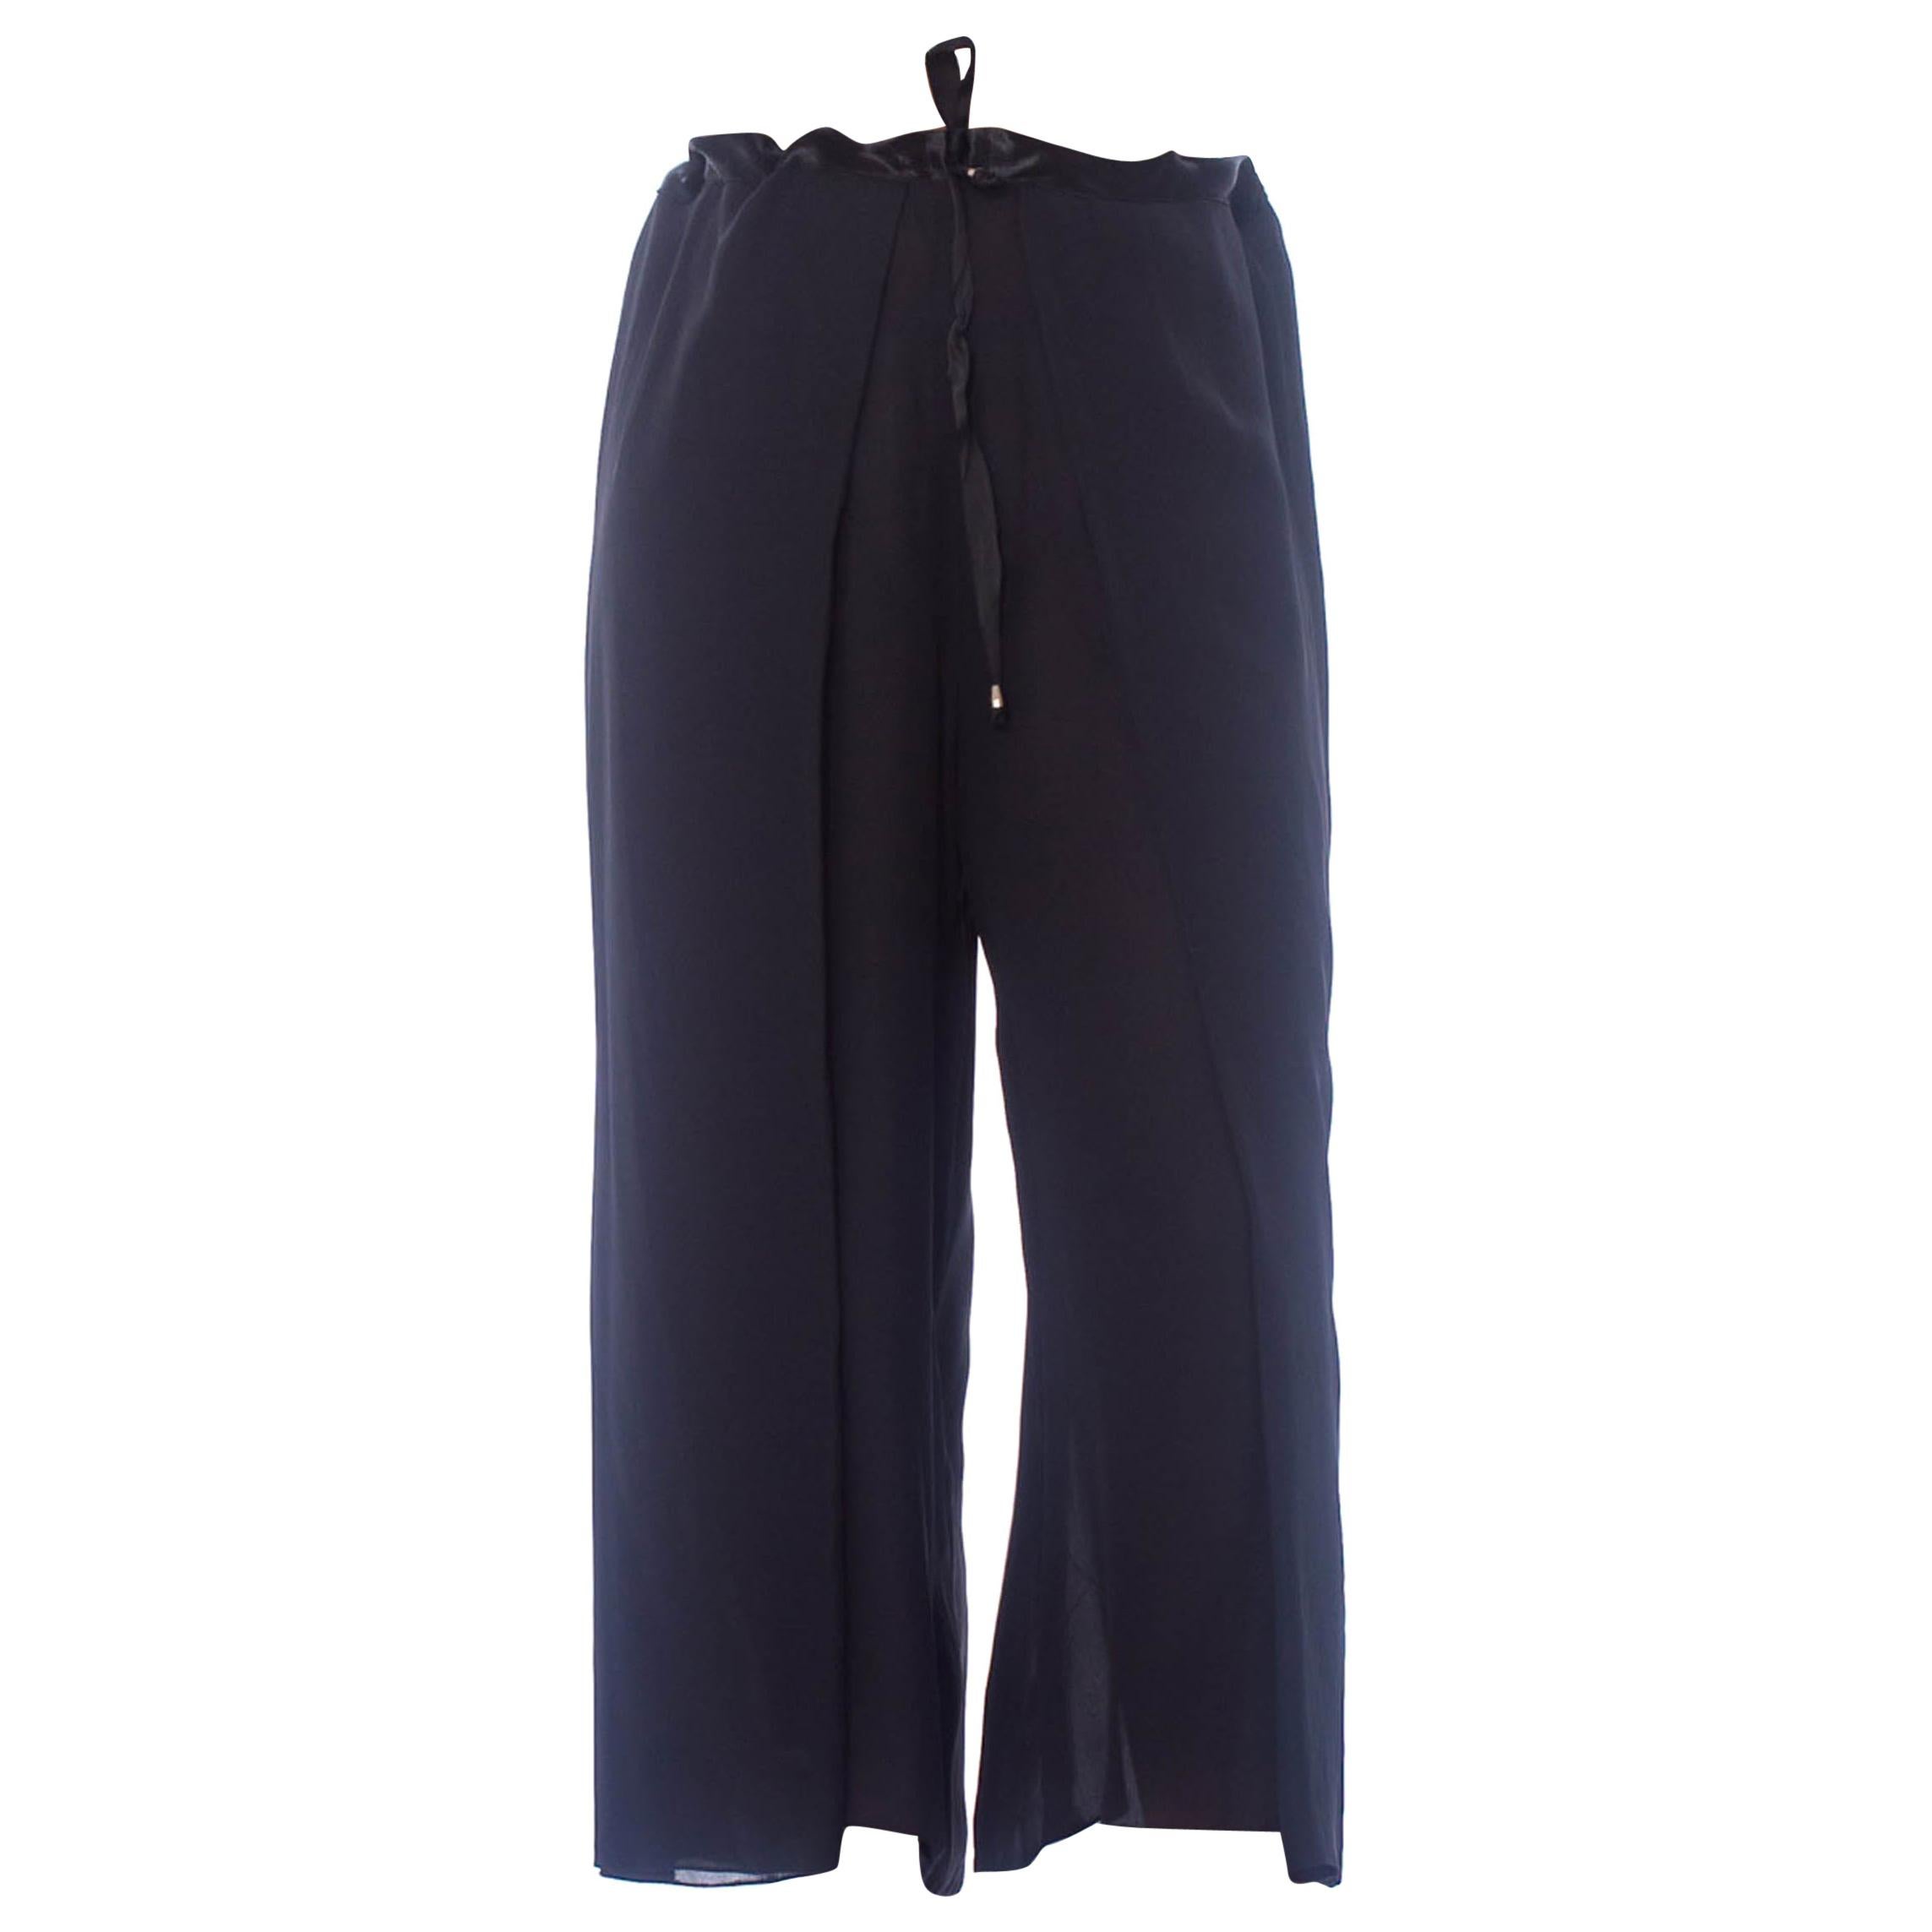 Pantalon portefeuille ajustable en mousseline de soie noire 1990S